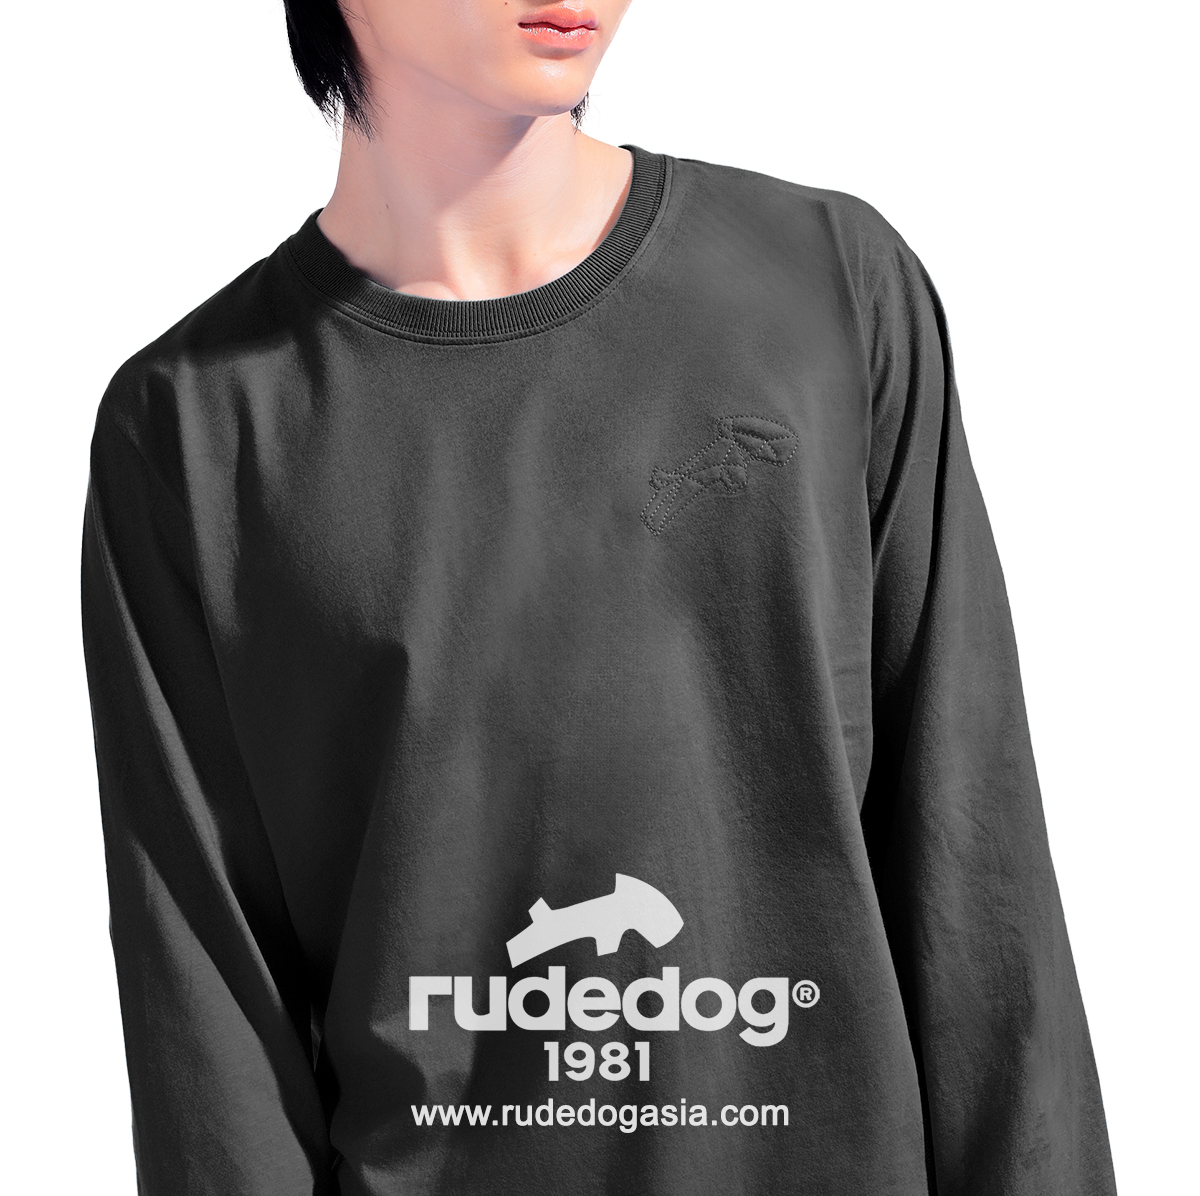 เสื้อยืดแขนยาว rudedog รุ่น Dogstar สีดำ ผู้ชาย